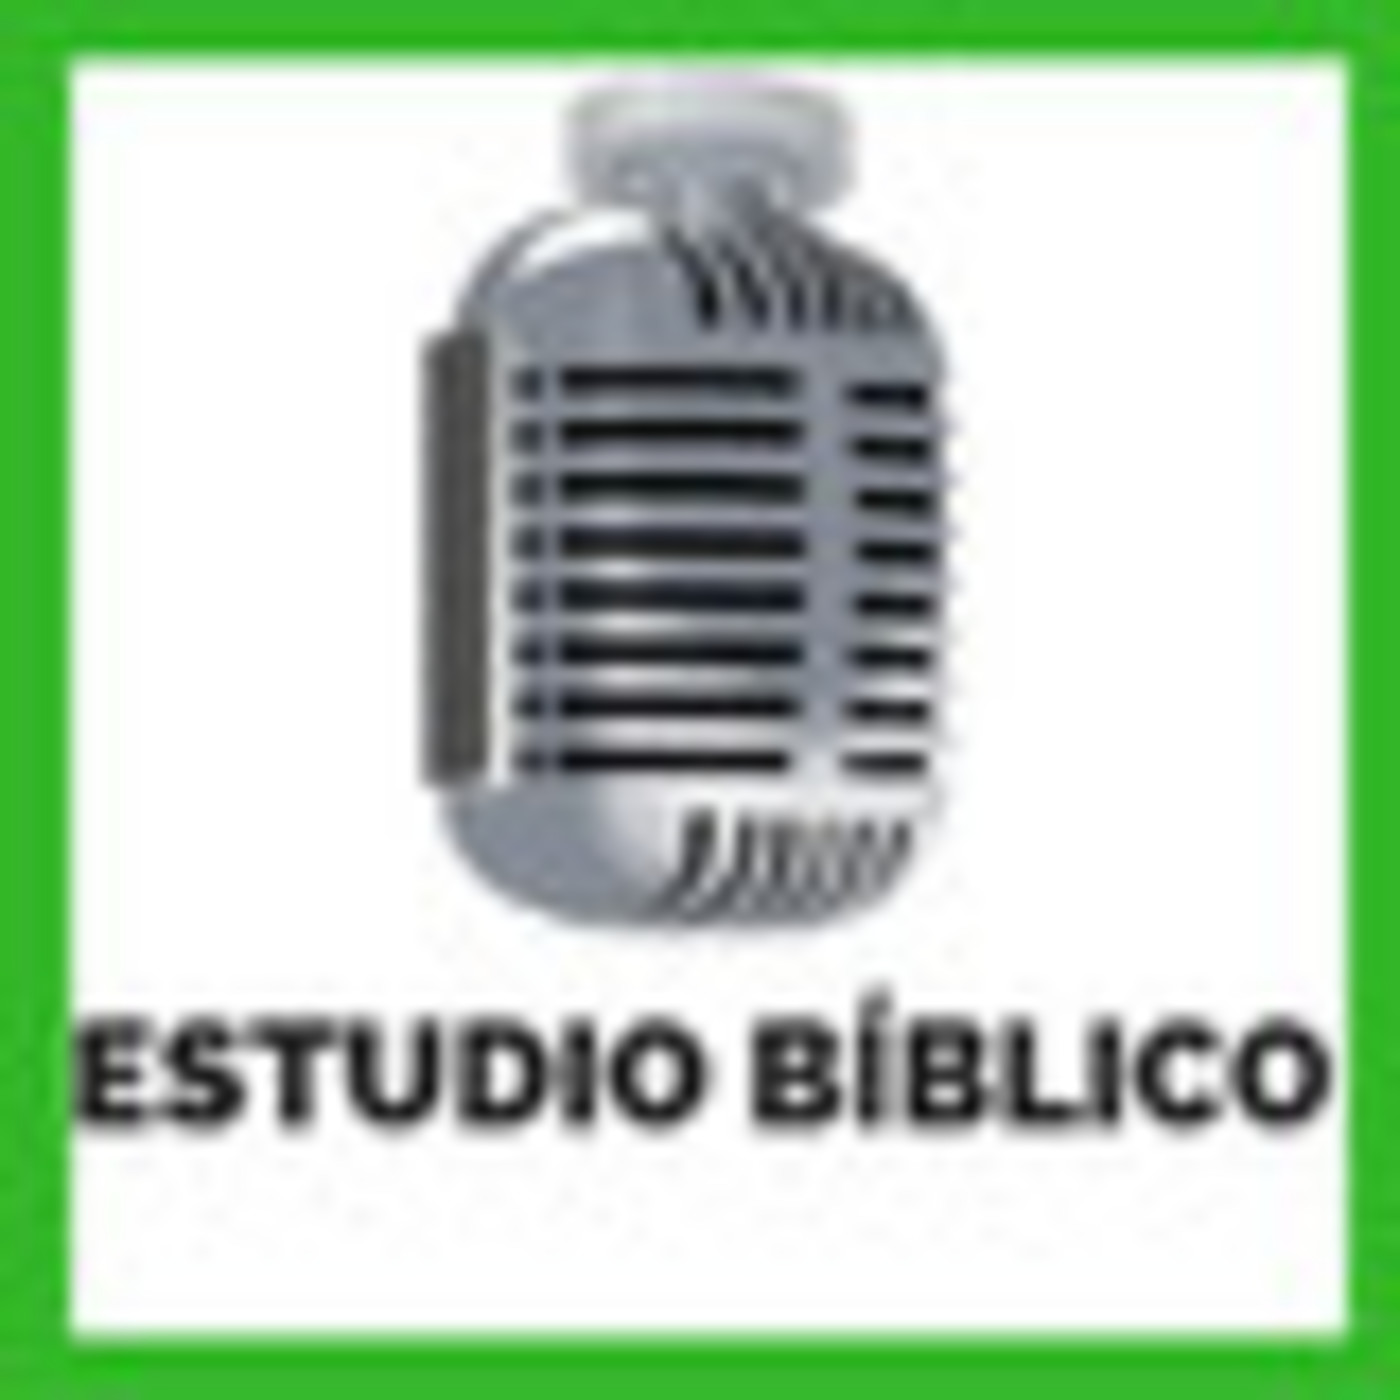 2019-09-18 | Estudio Bíblico | SERVIR A LOS NECESITADOS - TRABAJAR POR LA PAZ